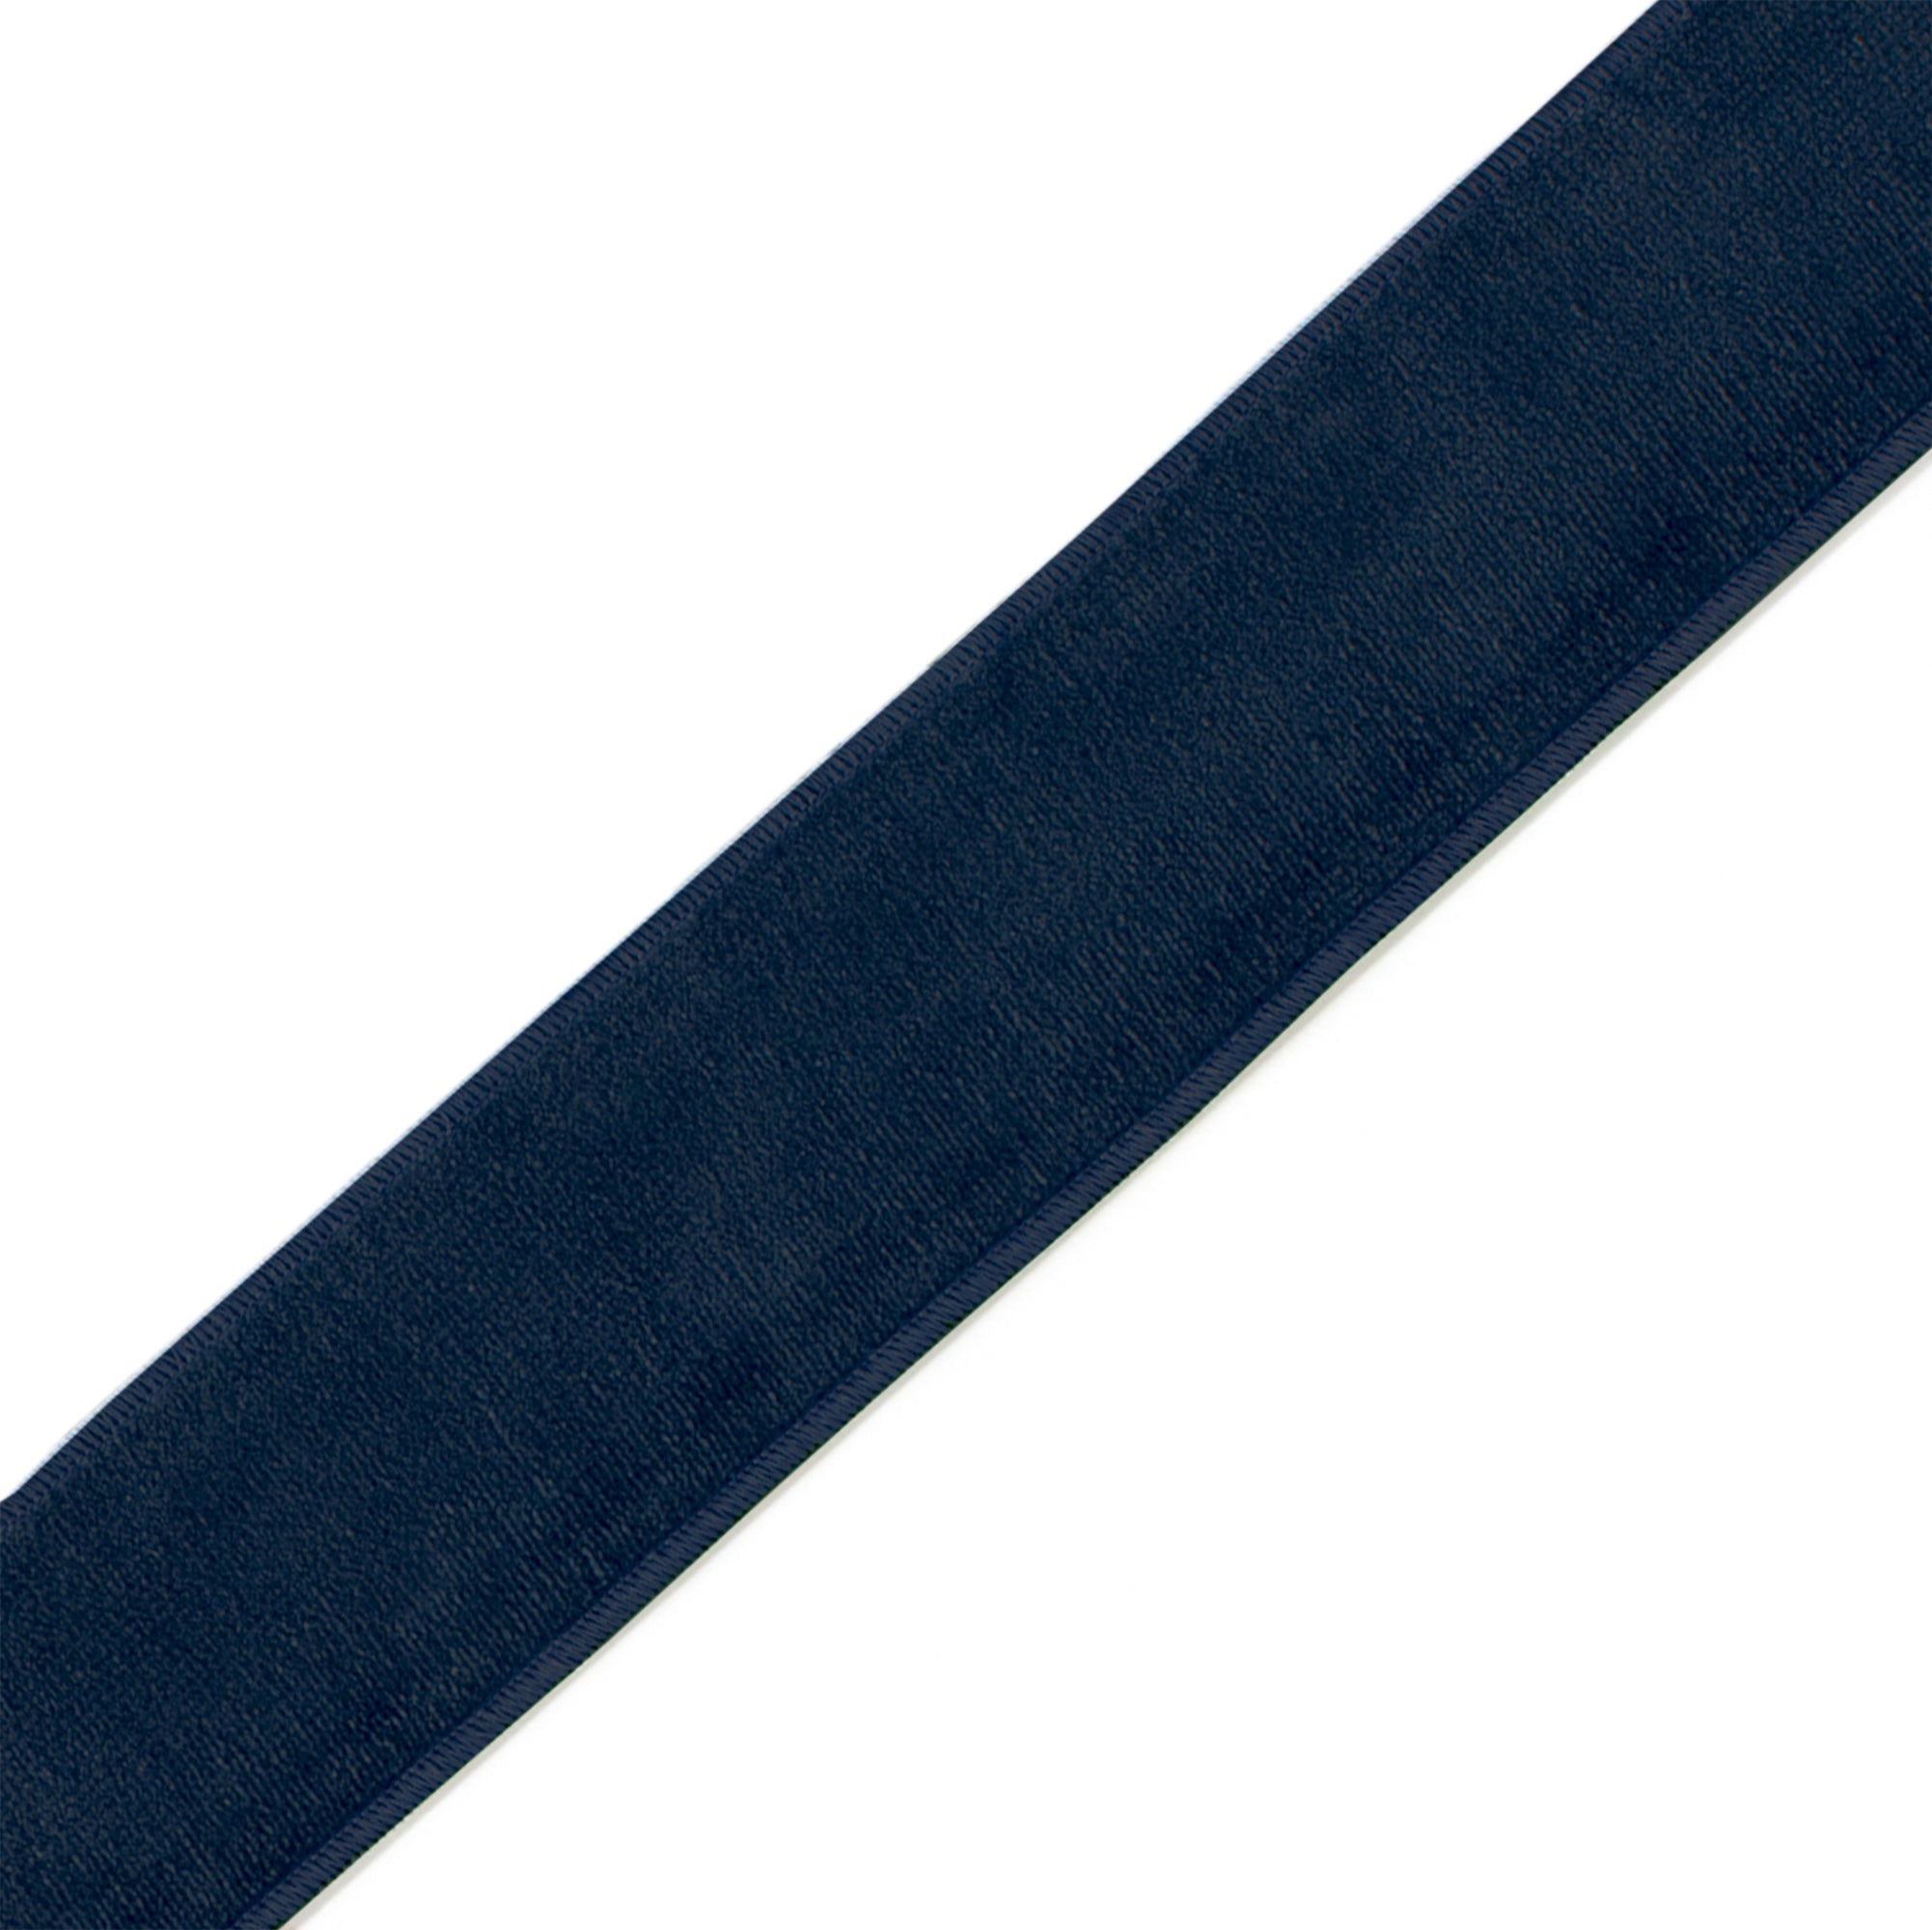 navy blue velvet band trim for curtains